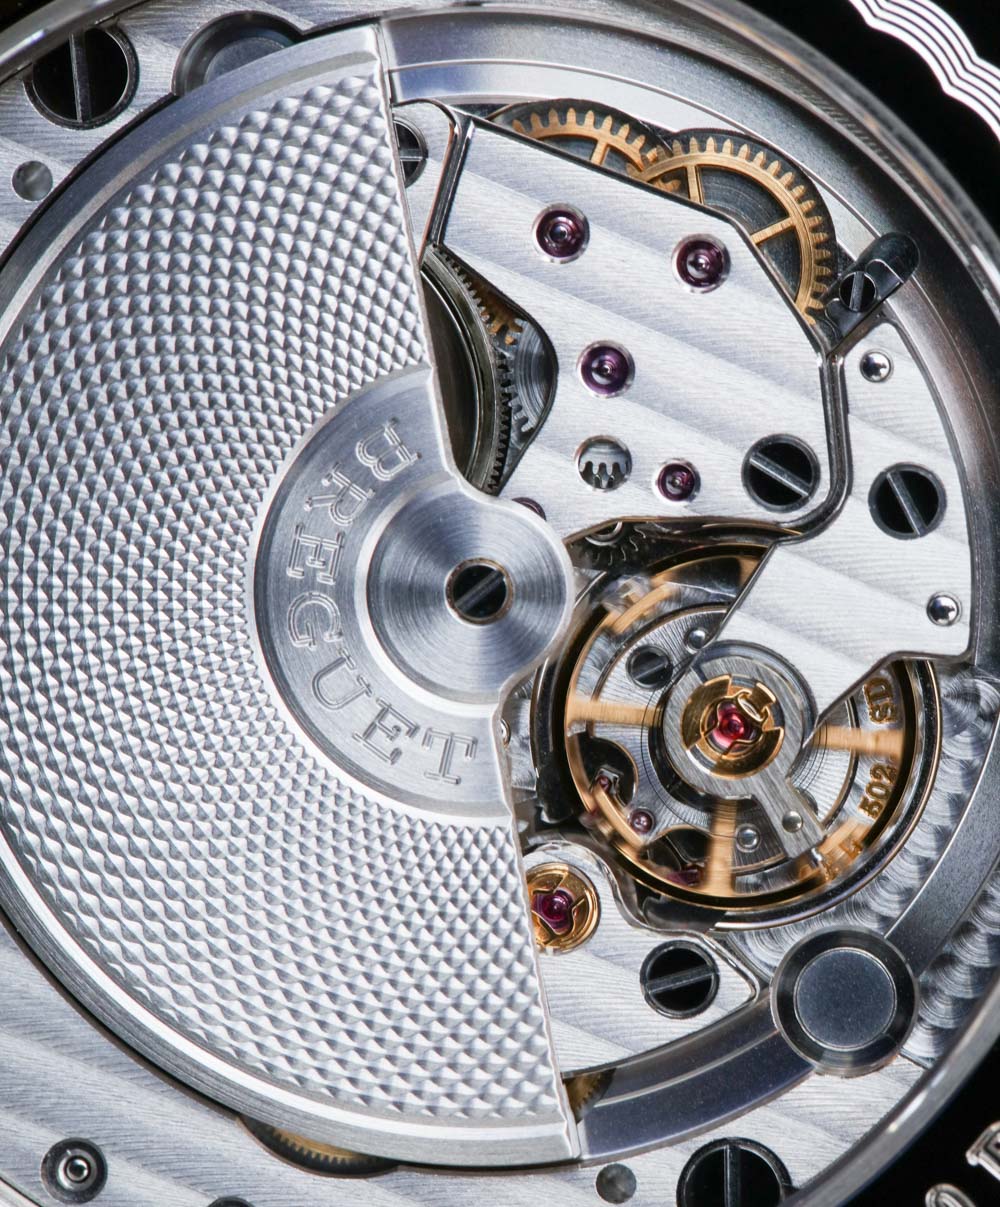 breguet-classique-7147-watch-11